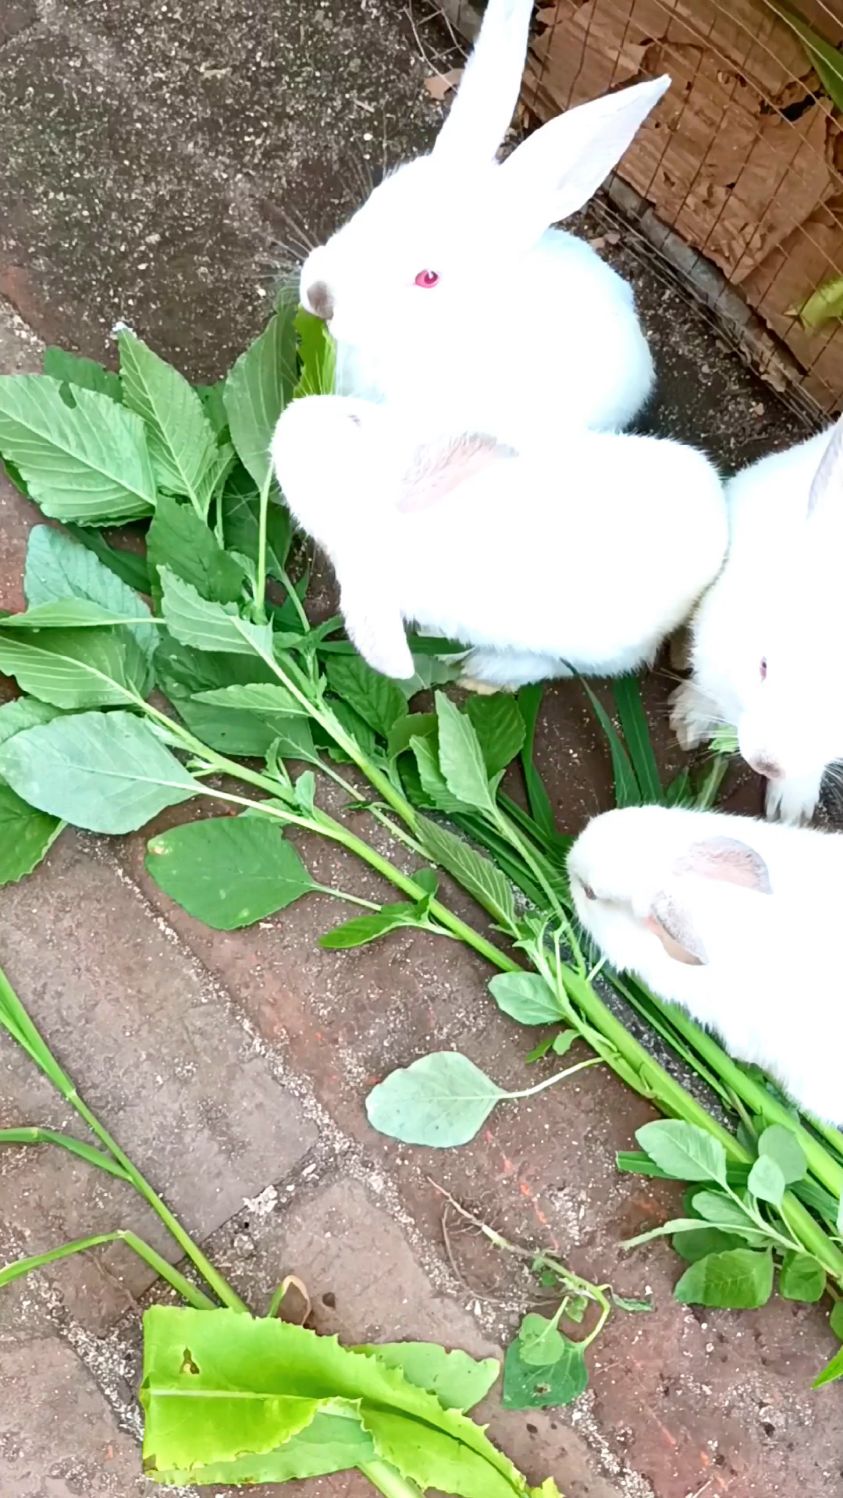 萌萌的小兔子一起吃草,场面好温馨,还合作吃一个叶子,爱了爱了!